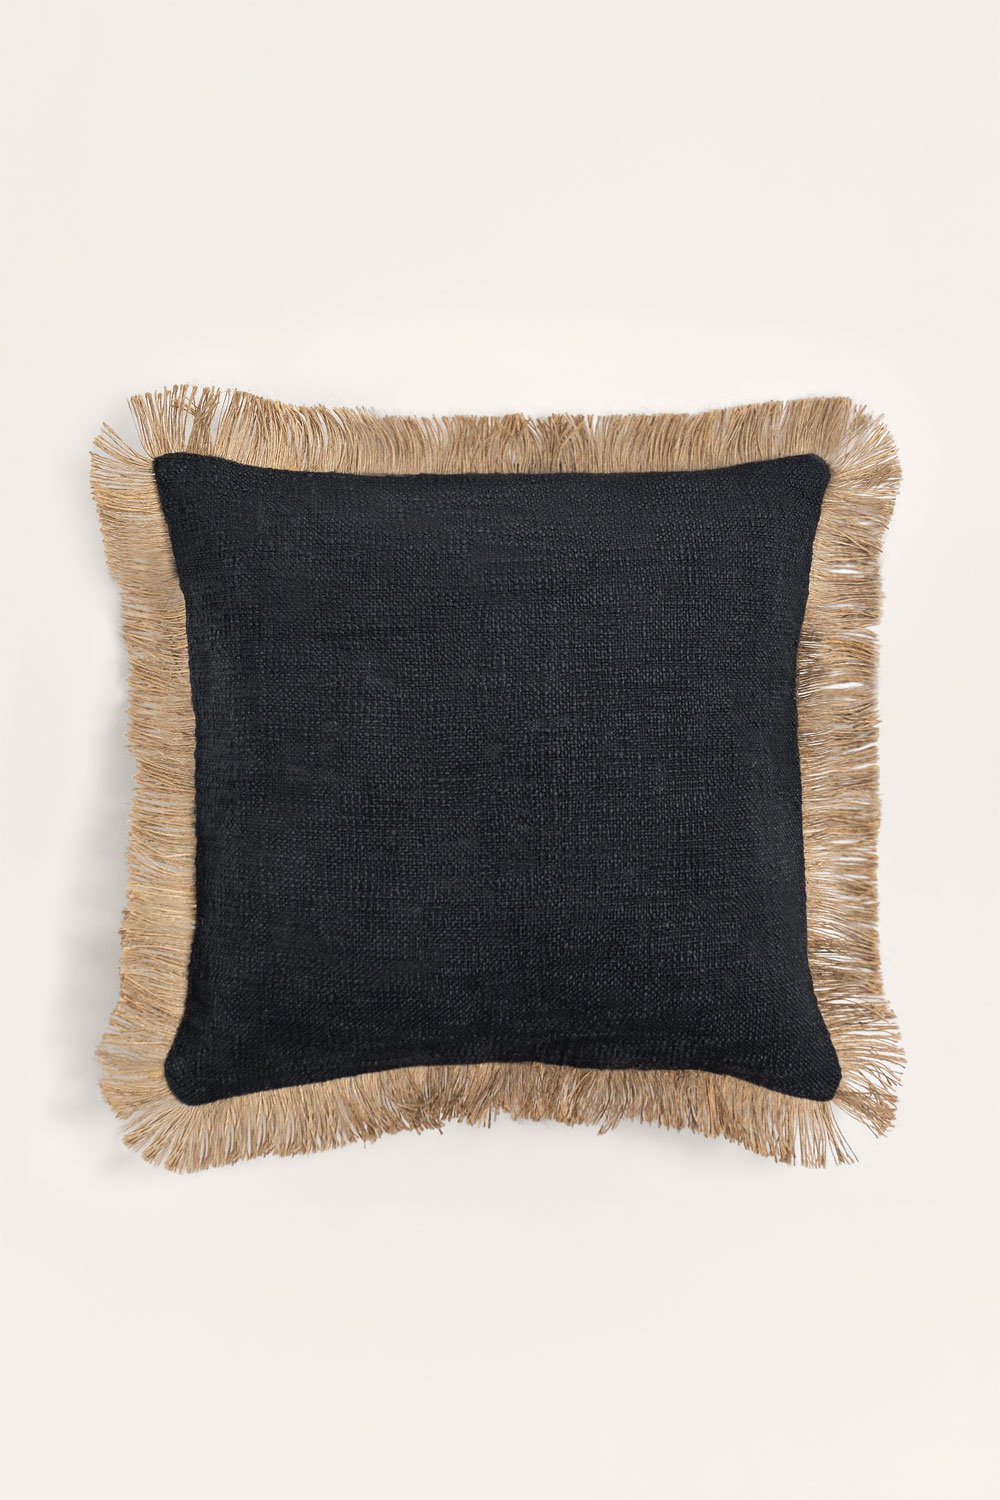 Coussin carré en coton (45x45 cm) Paraiba, image de la galerie 1